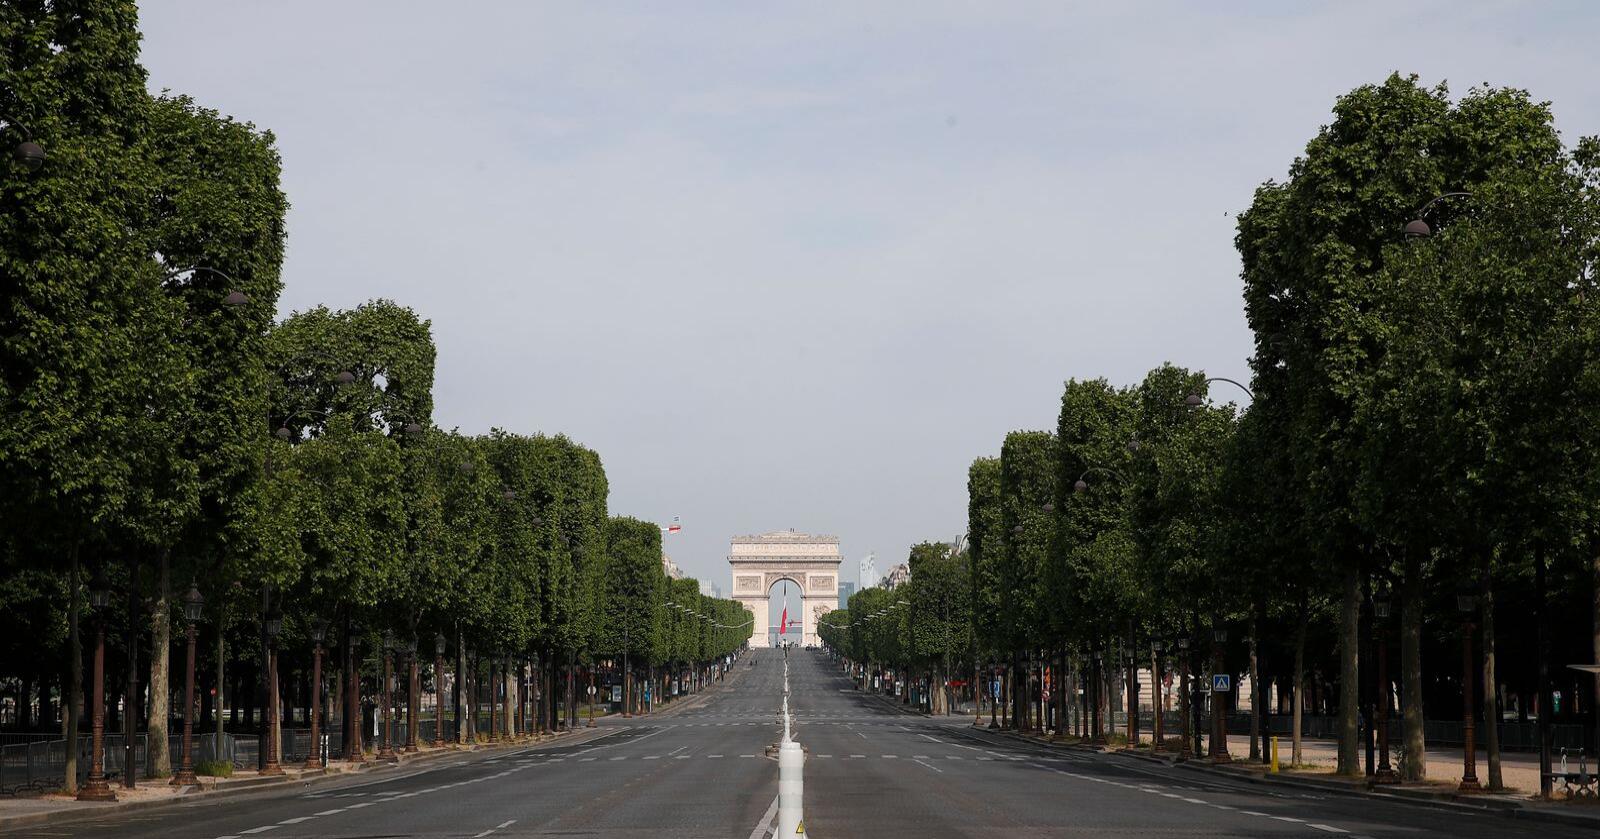 En folketom Champs-Élysées i sentrum av Paris på frigjøringsdagen 8. mai. Veitrafikken er blitt kraftig redusert under koronakrisen, noe som har bidratt til store fall i CO2-utslippene. I Paris stupte utslippene med rundt 70 prosent i mars, ifølge BBC. Foto: François Mori / Pool / AP / NTB scanpix
